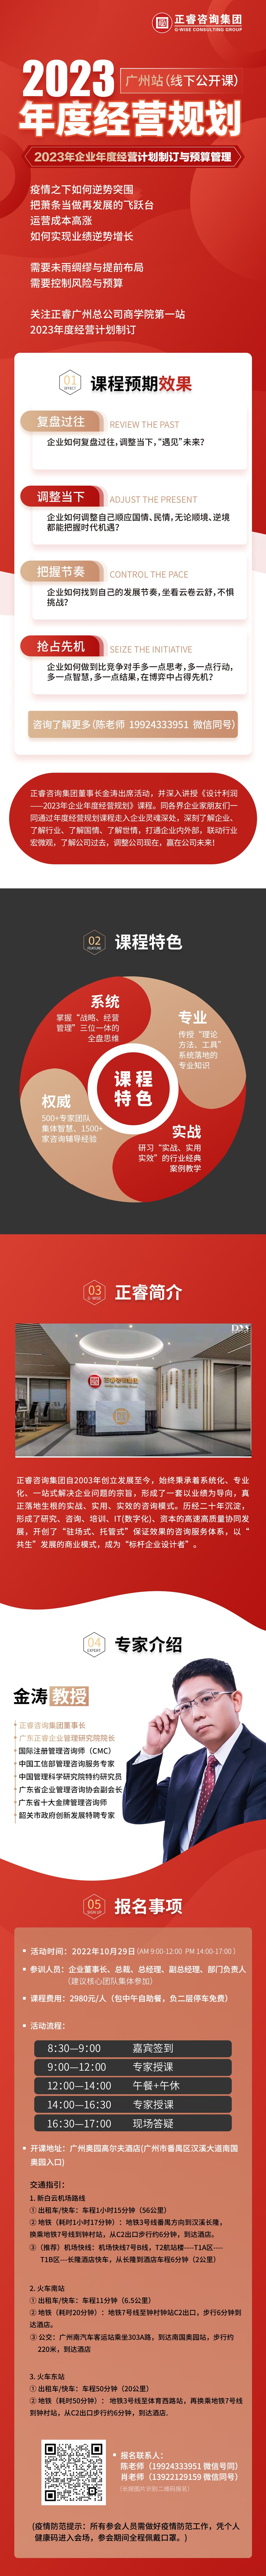  大红鹰dhy集团-2023年度经营规划线下公开课（广州站）